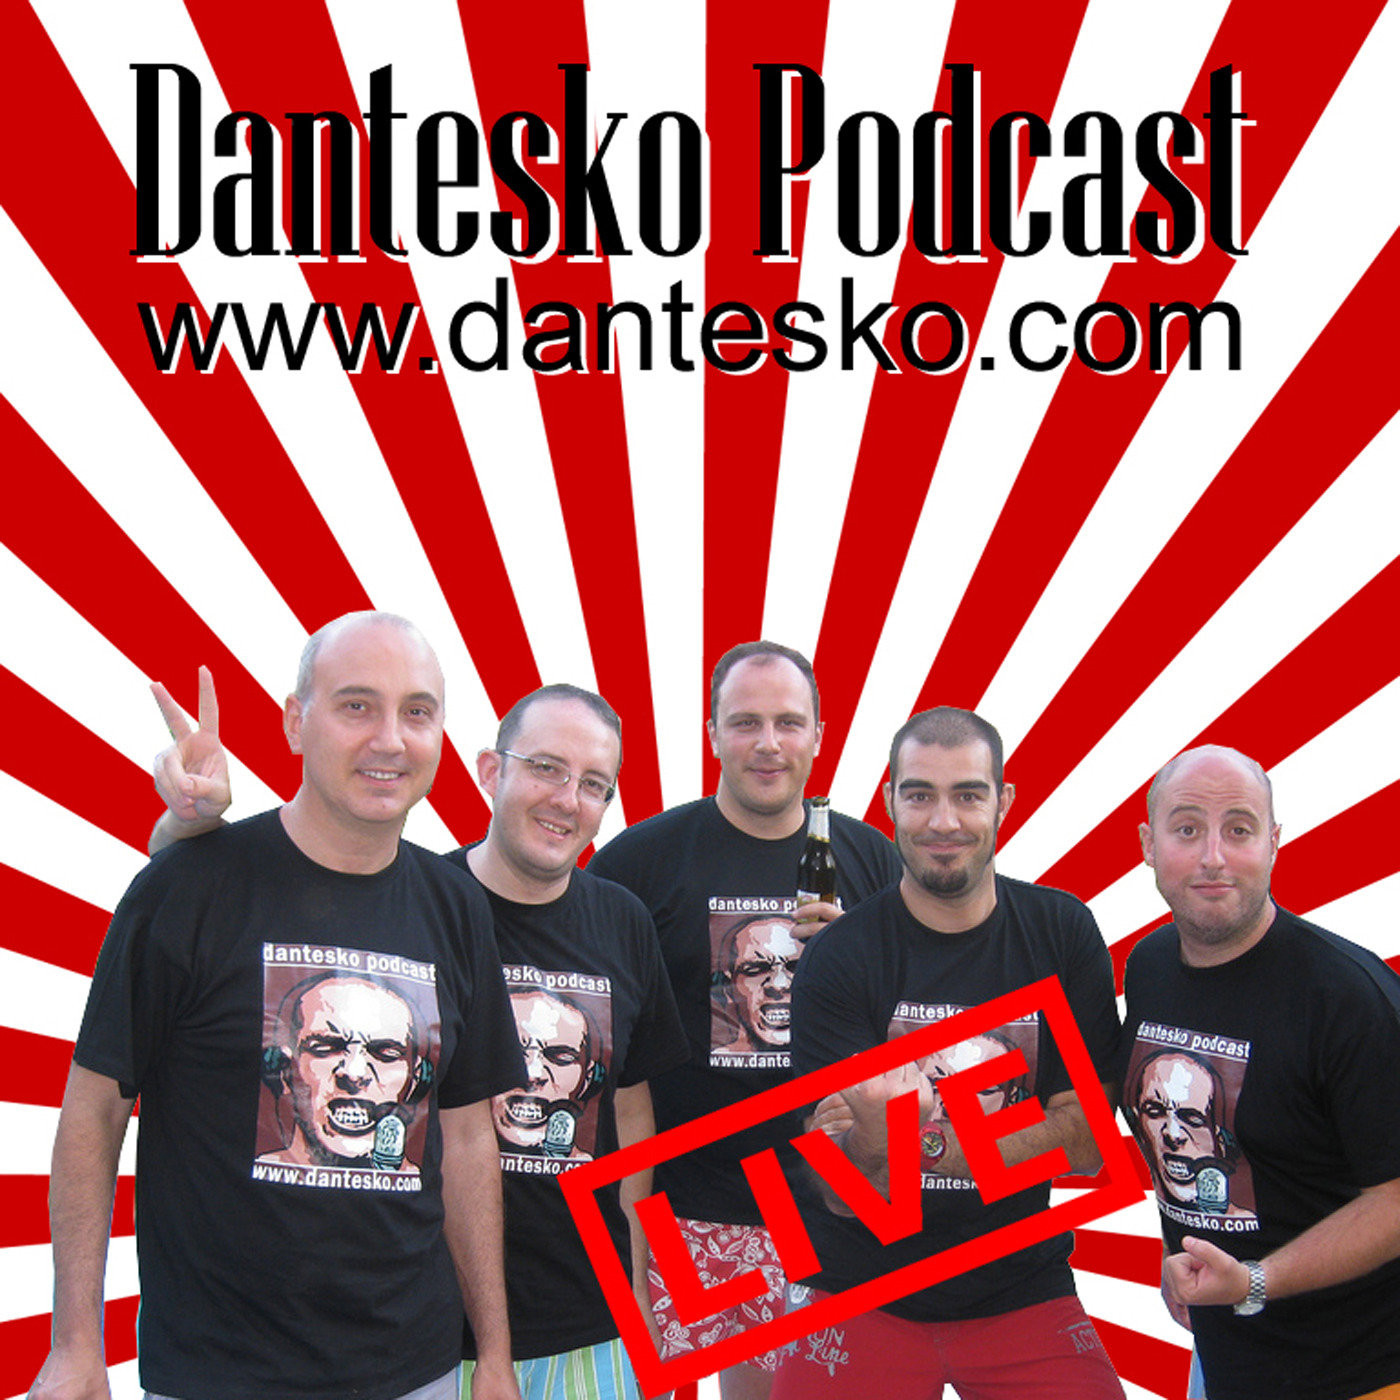 Dantesko Podcast